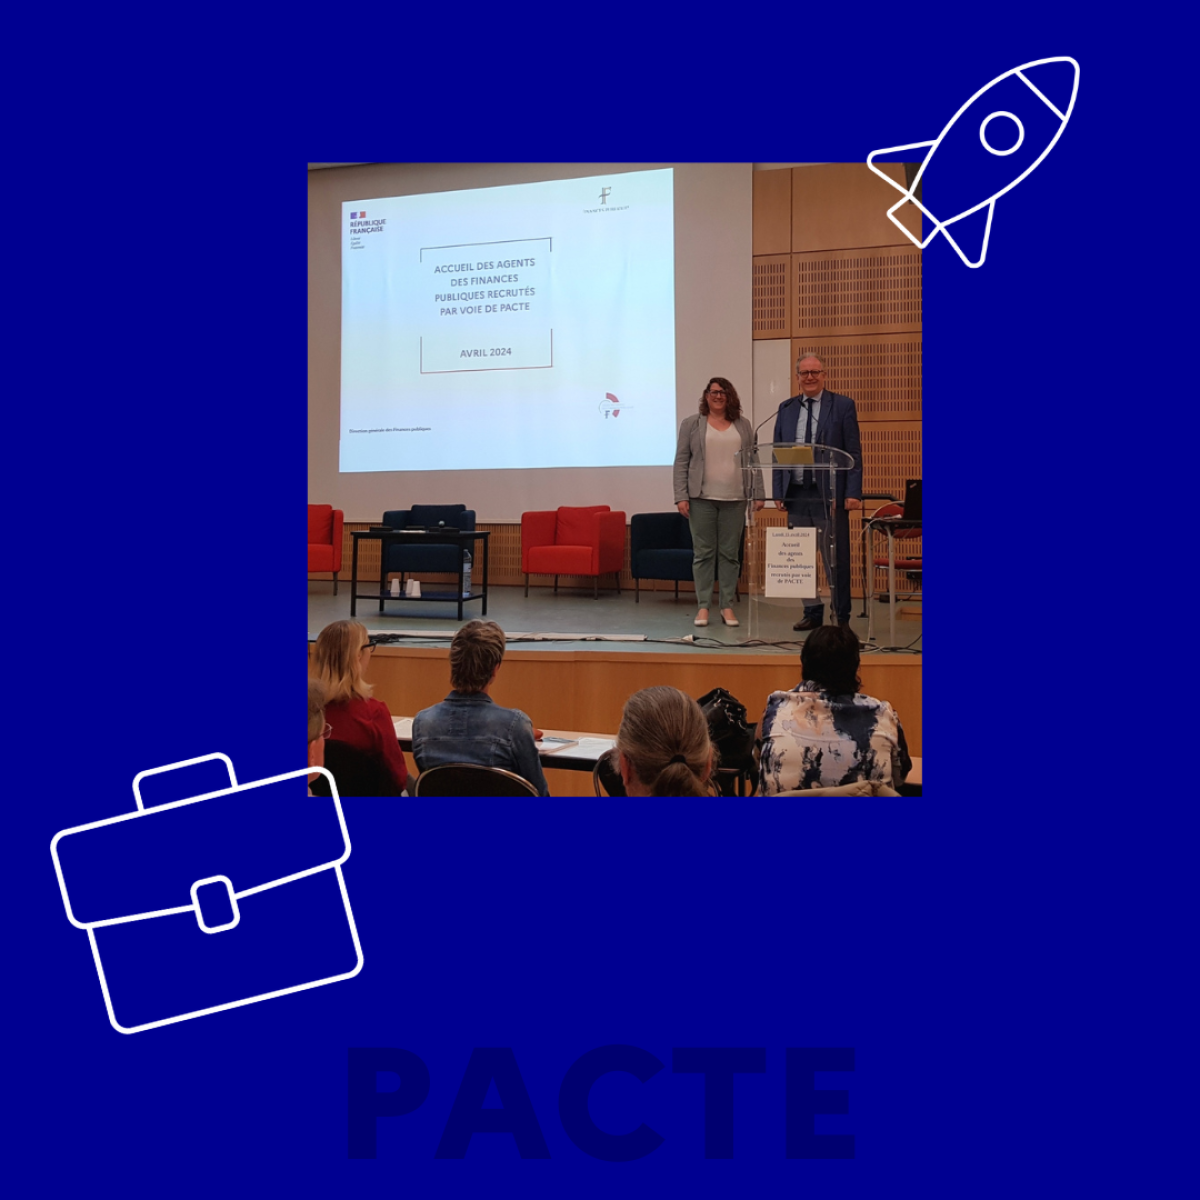 Etablissement de formation de l'Ecole nationale des Finances publiques de Clermont-Ferrand accueillant les nouveaux agents PACTE